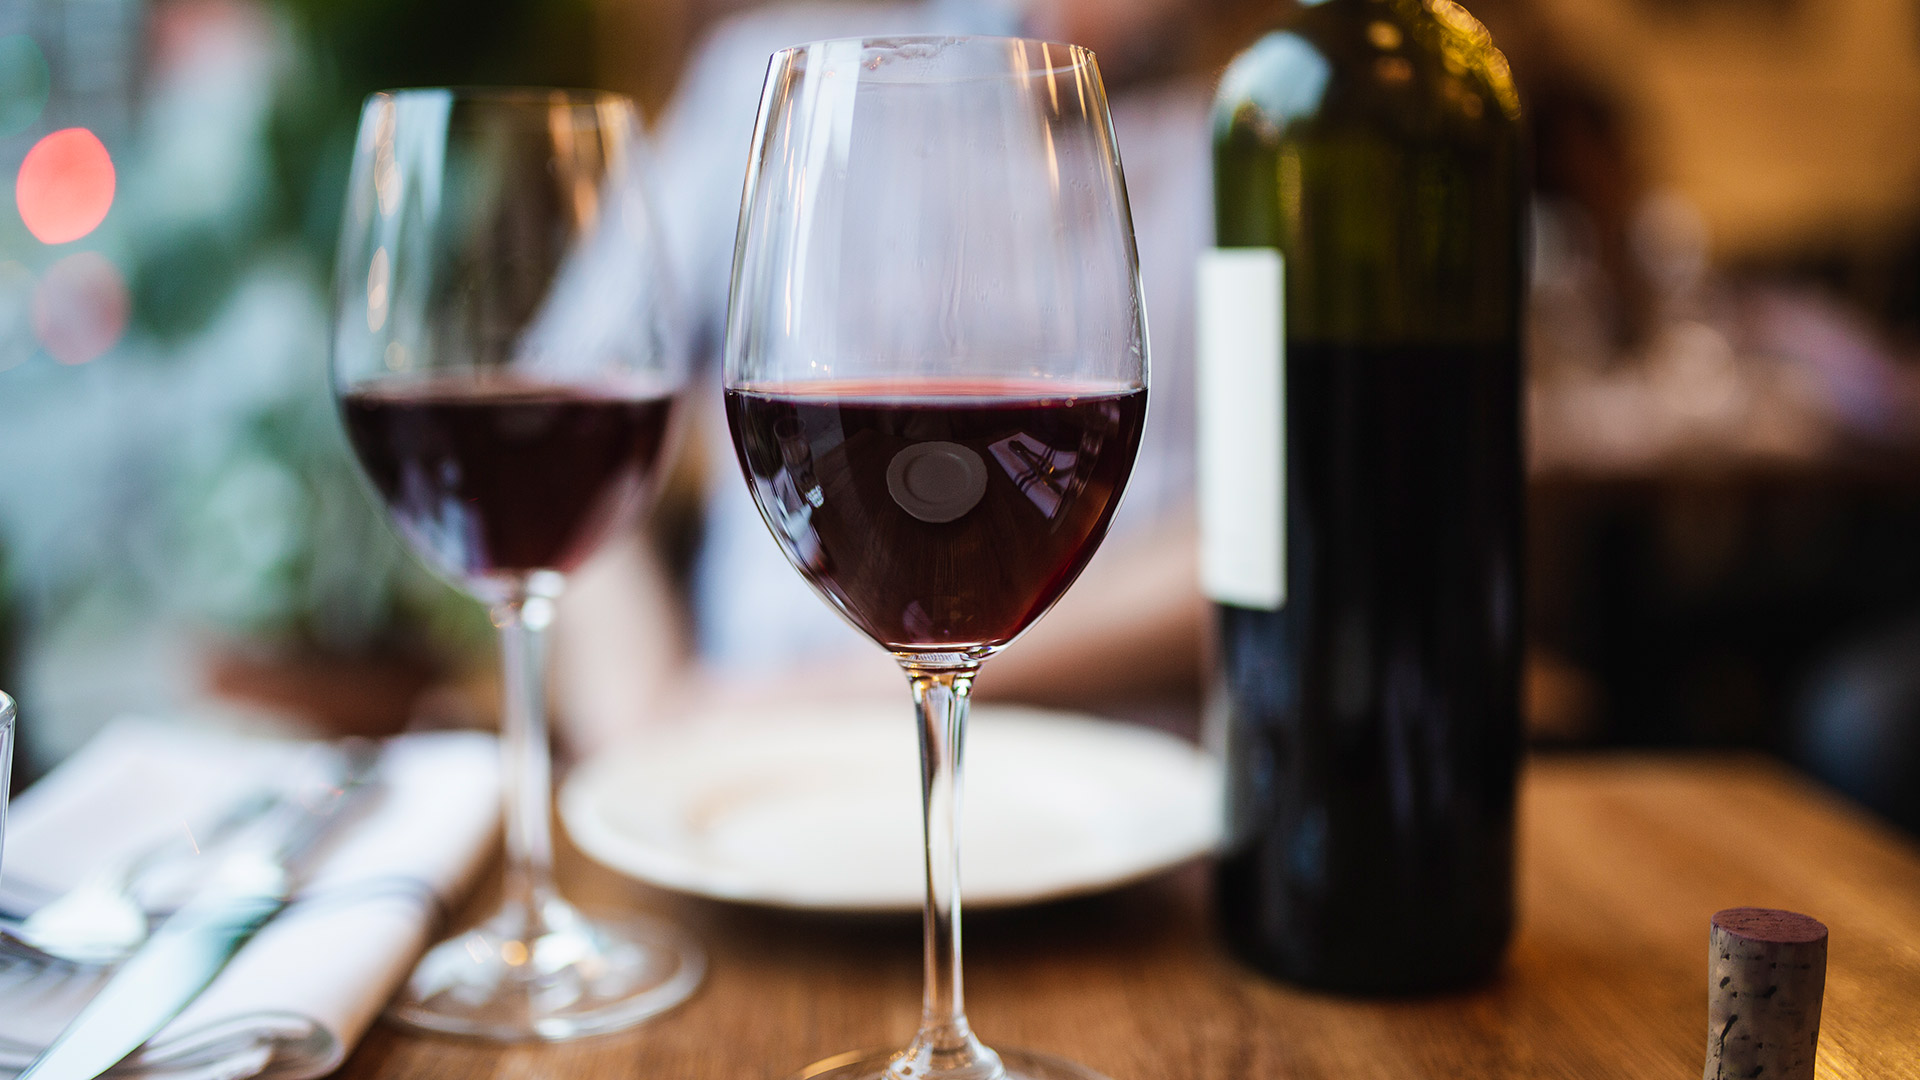 Las propiedades antioxidantes del resveratrol fueron observadas en el vino tinto